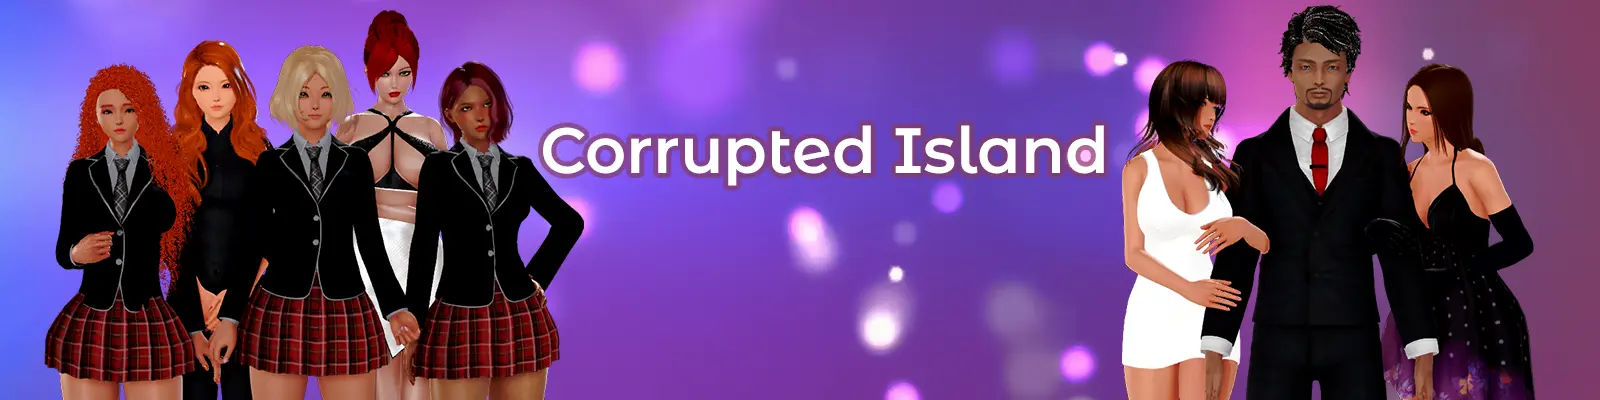 Corrupted Island Remake [v0.1 Demo] main image